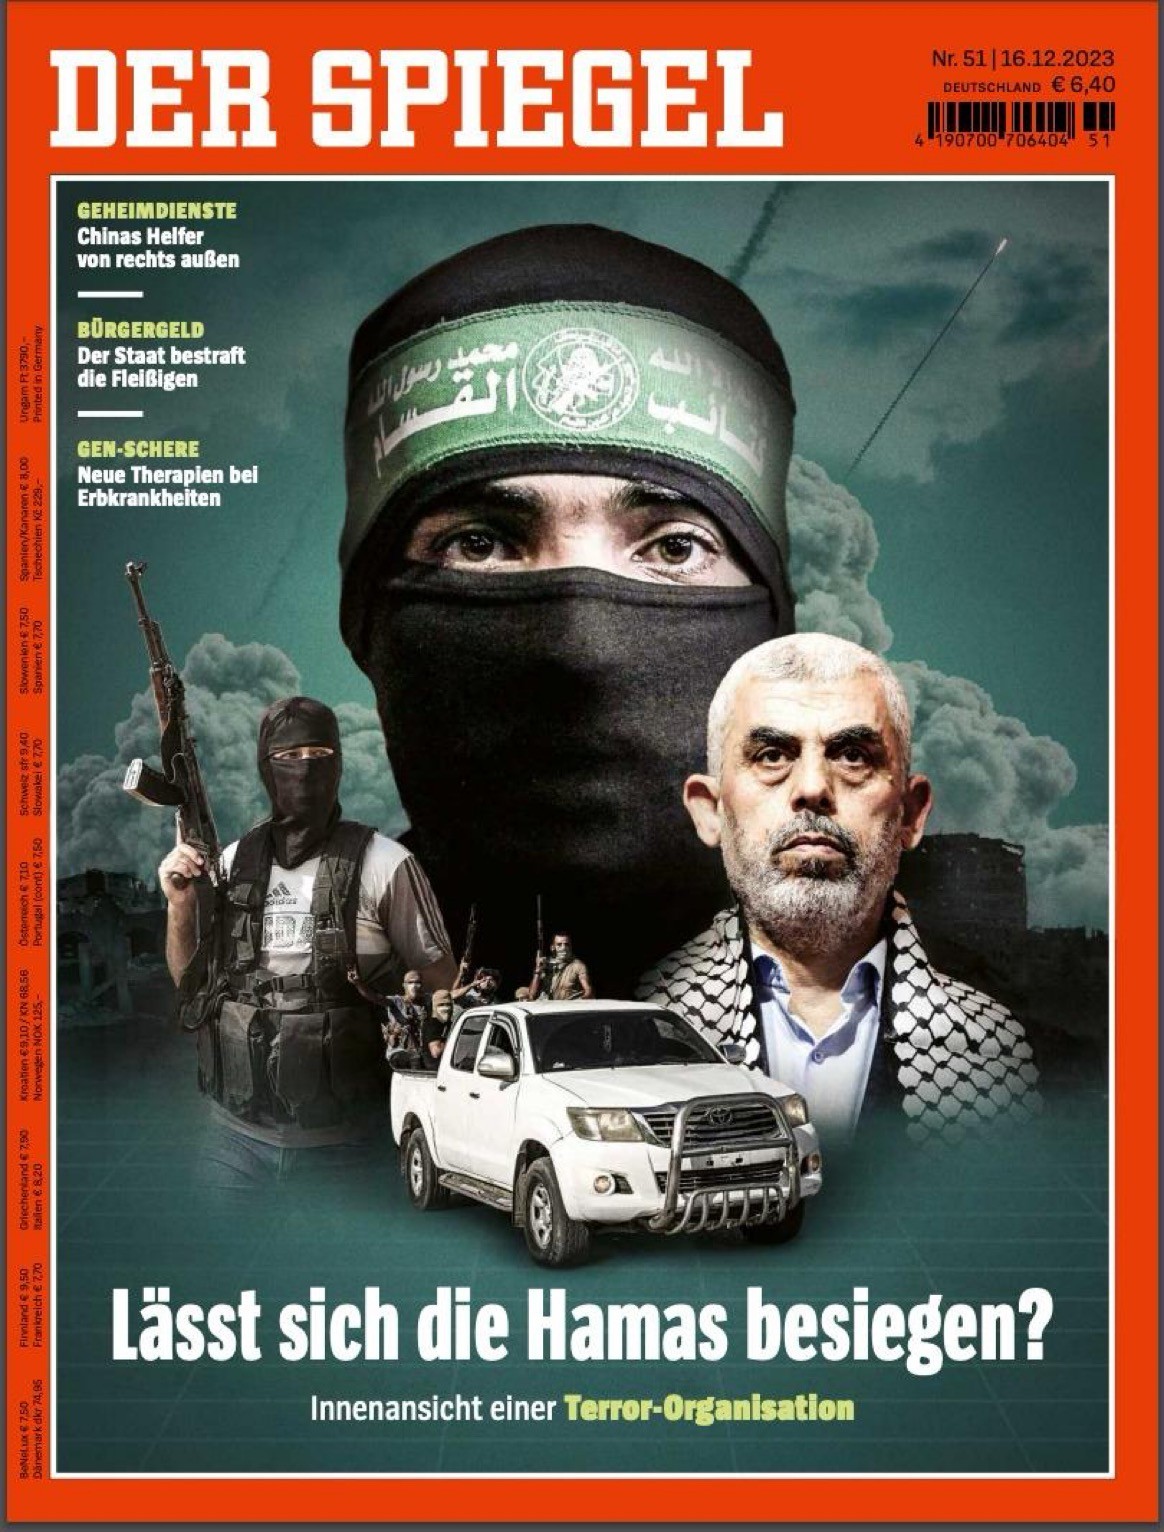 ديرشبيغل" الألمانية: هل هزيمة حماس ممكنة؟